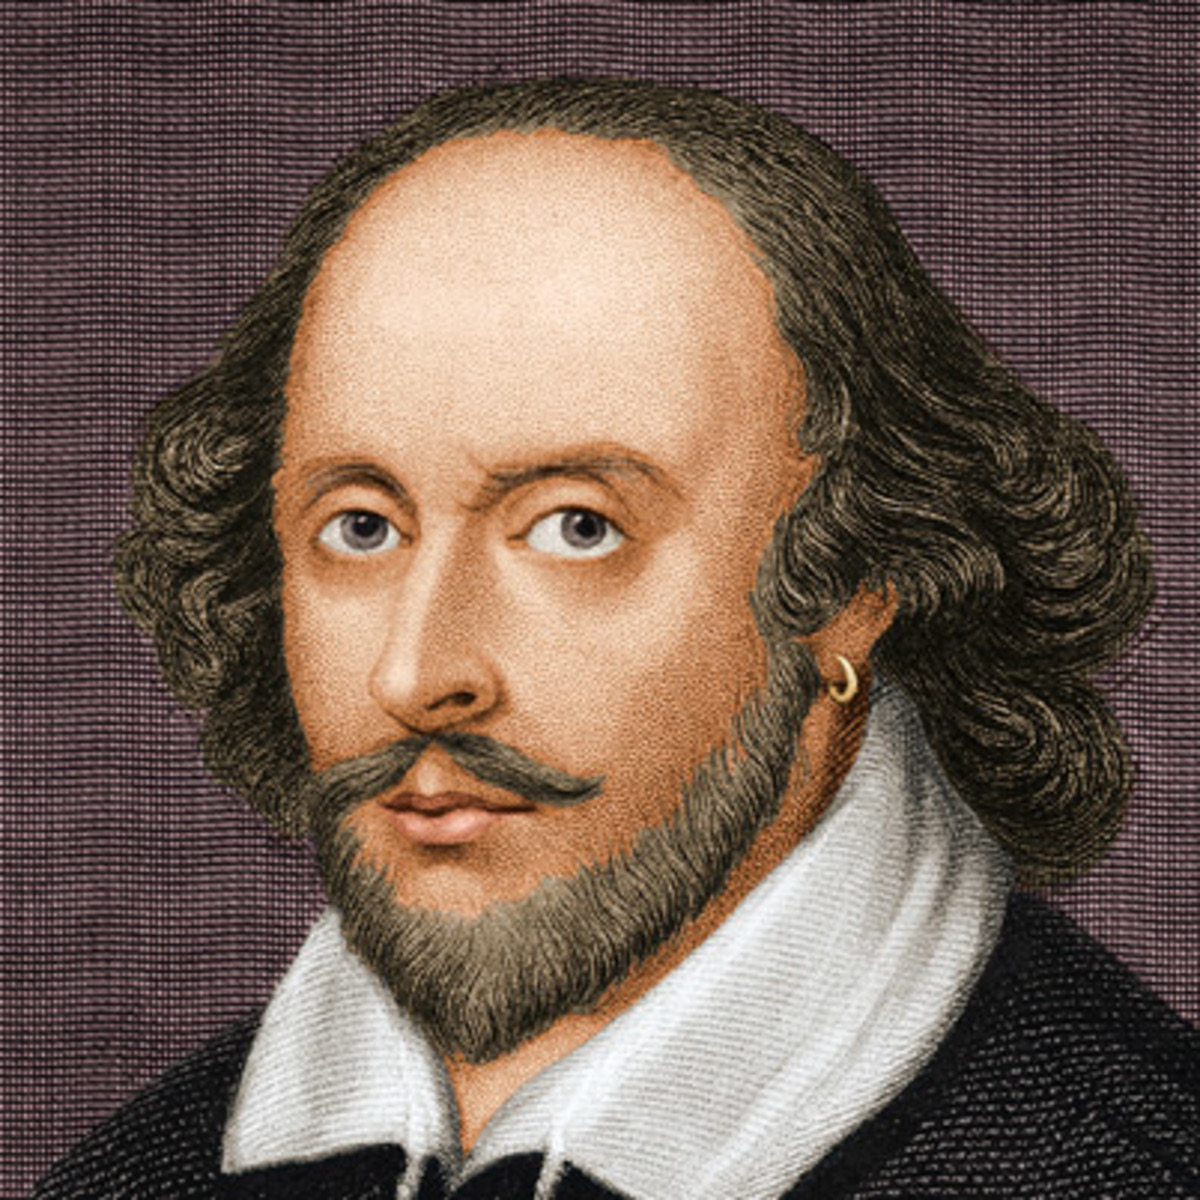 “Kam mësuar”, mësimet më me vlerë nga William Shakespeare